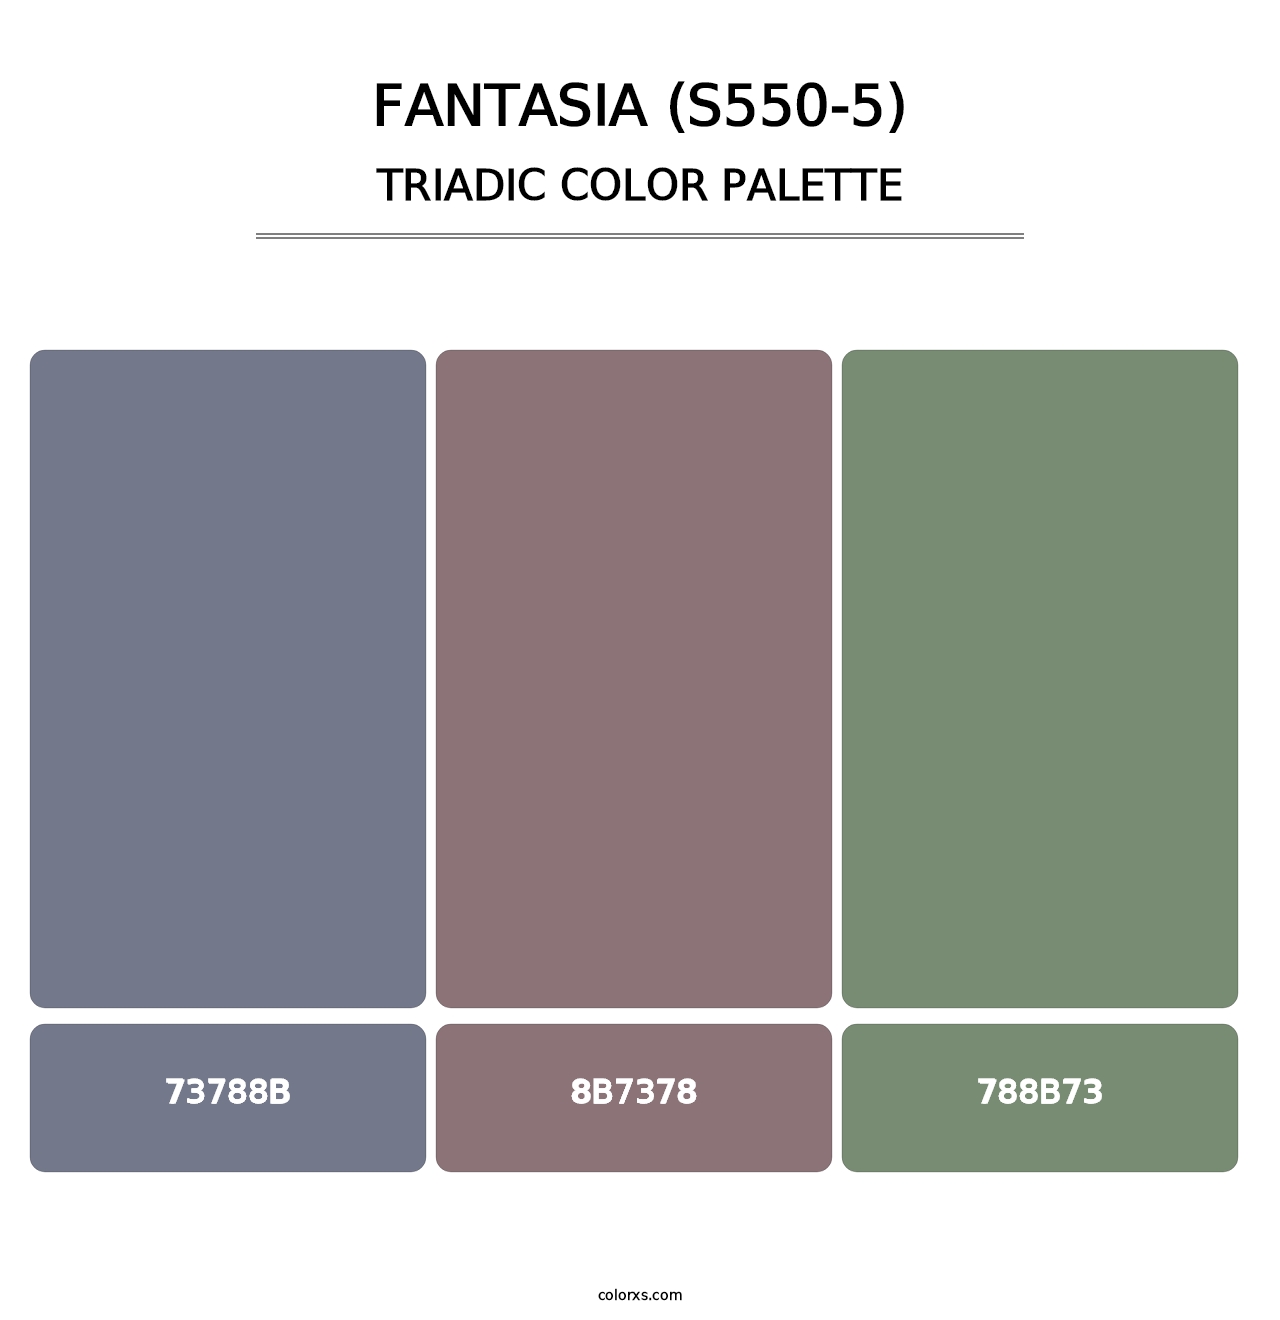 Fantasia (S550-5) - Triadic Color Palette